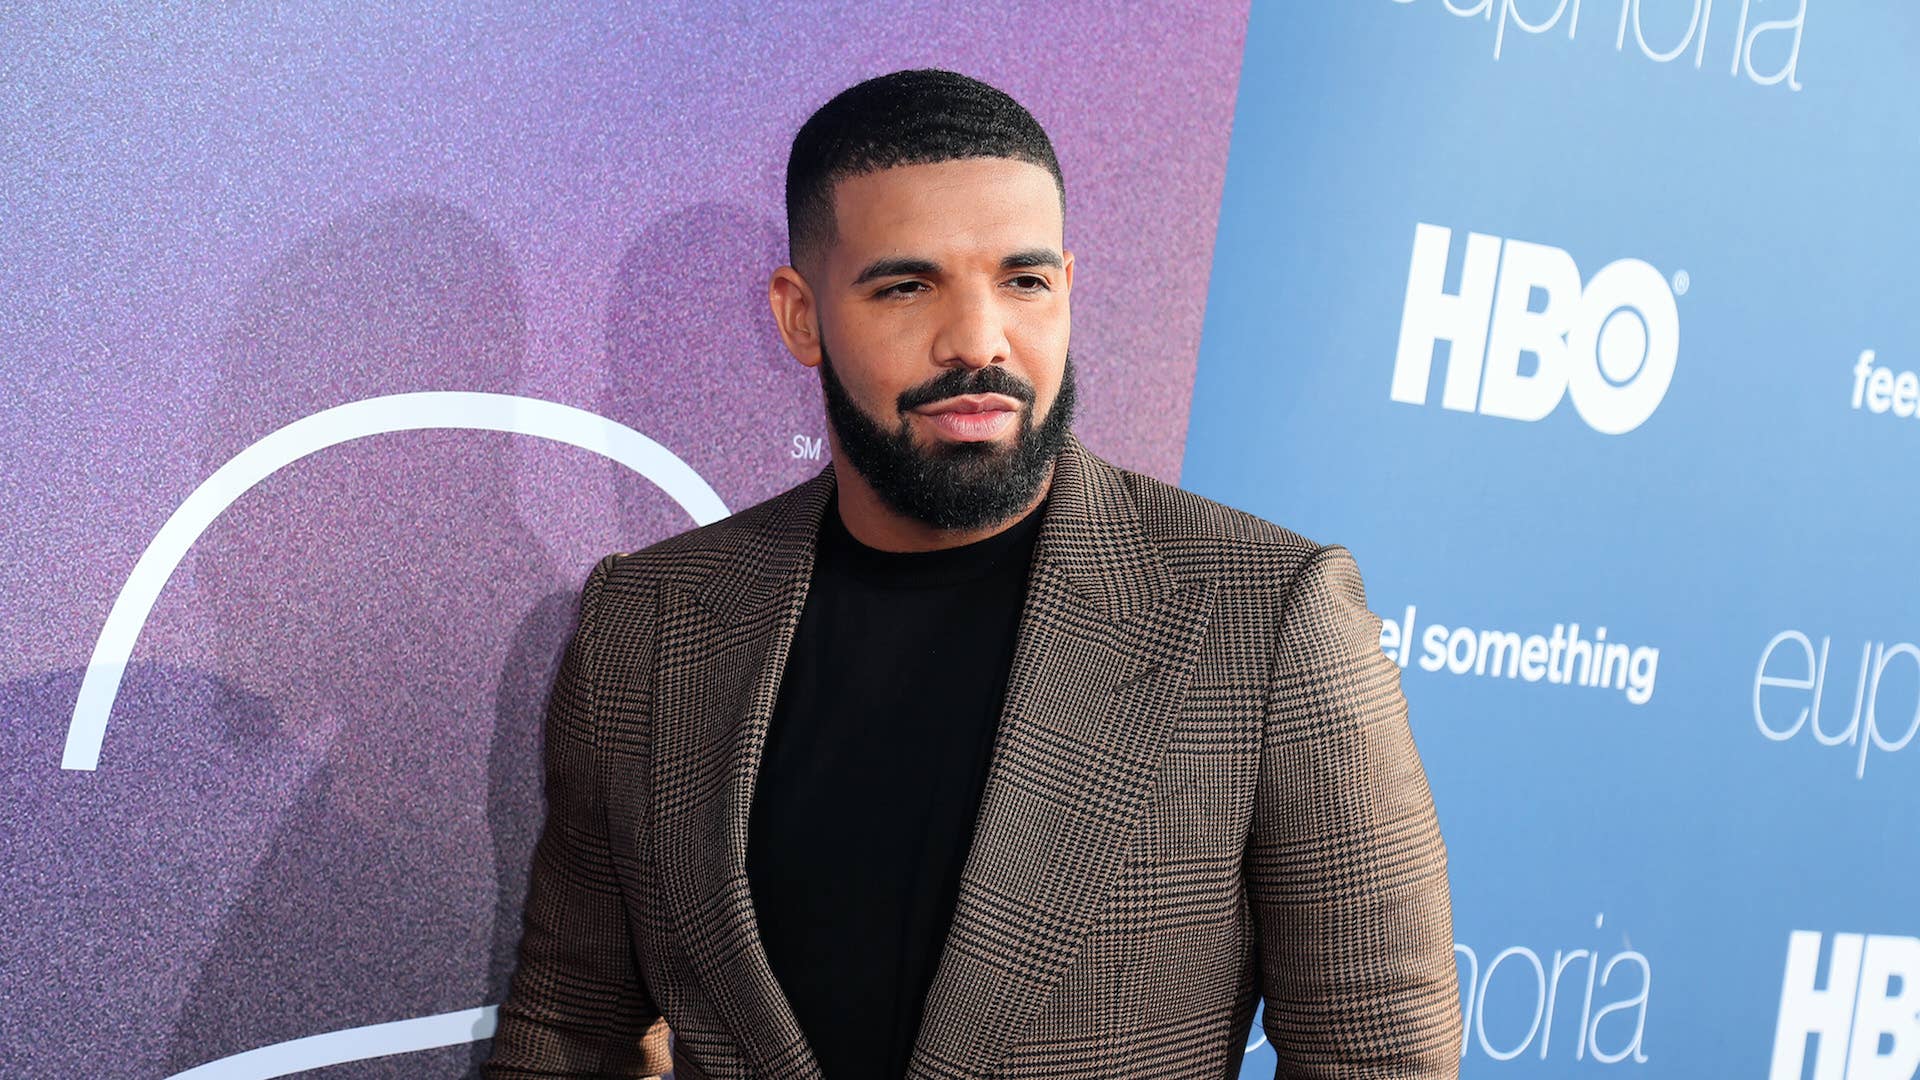 Drake attends the LA Premiere of HBO's "Euphoria" at The Cinerama Dome